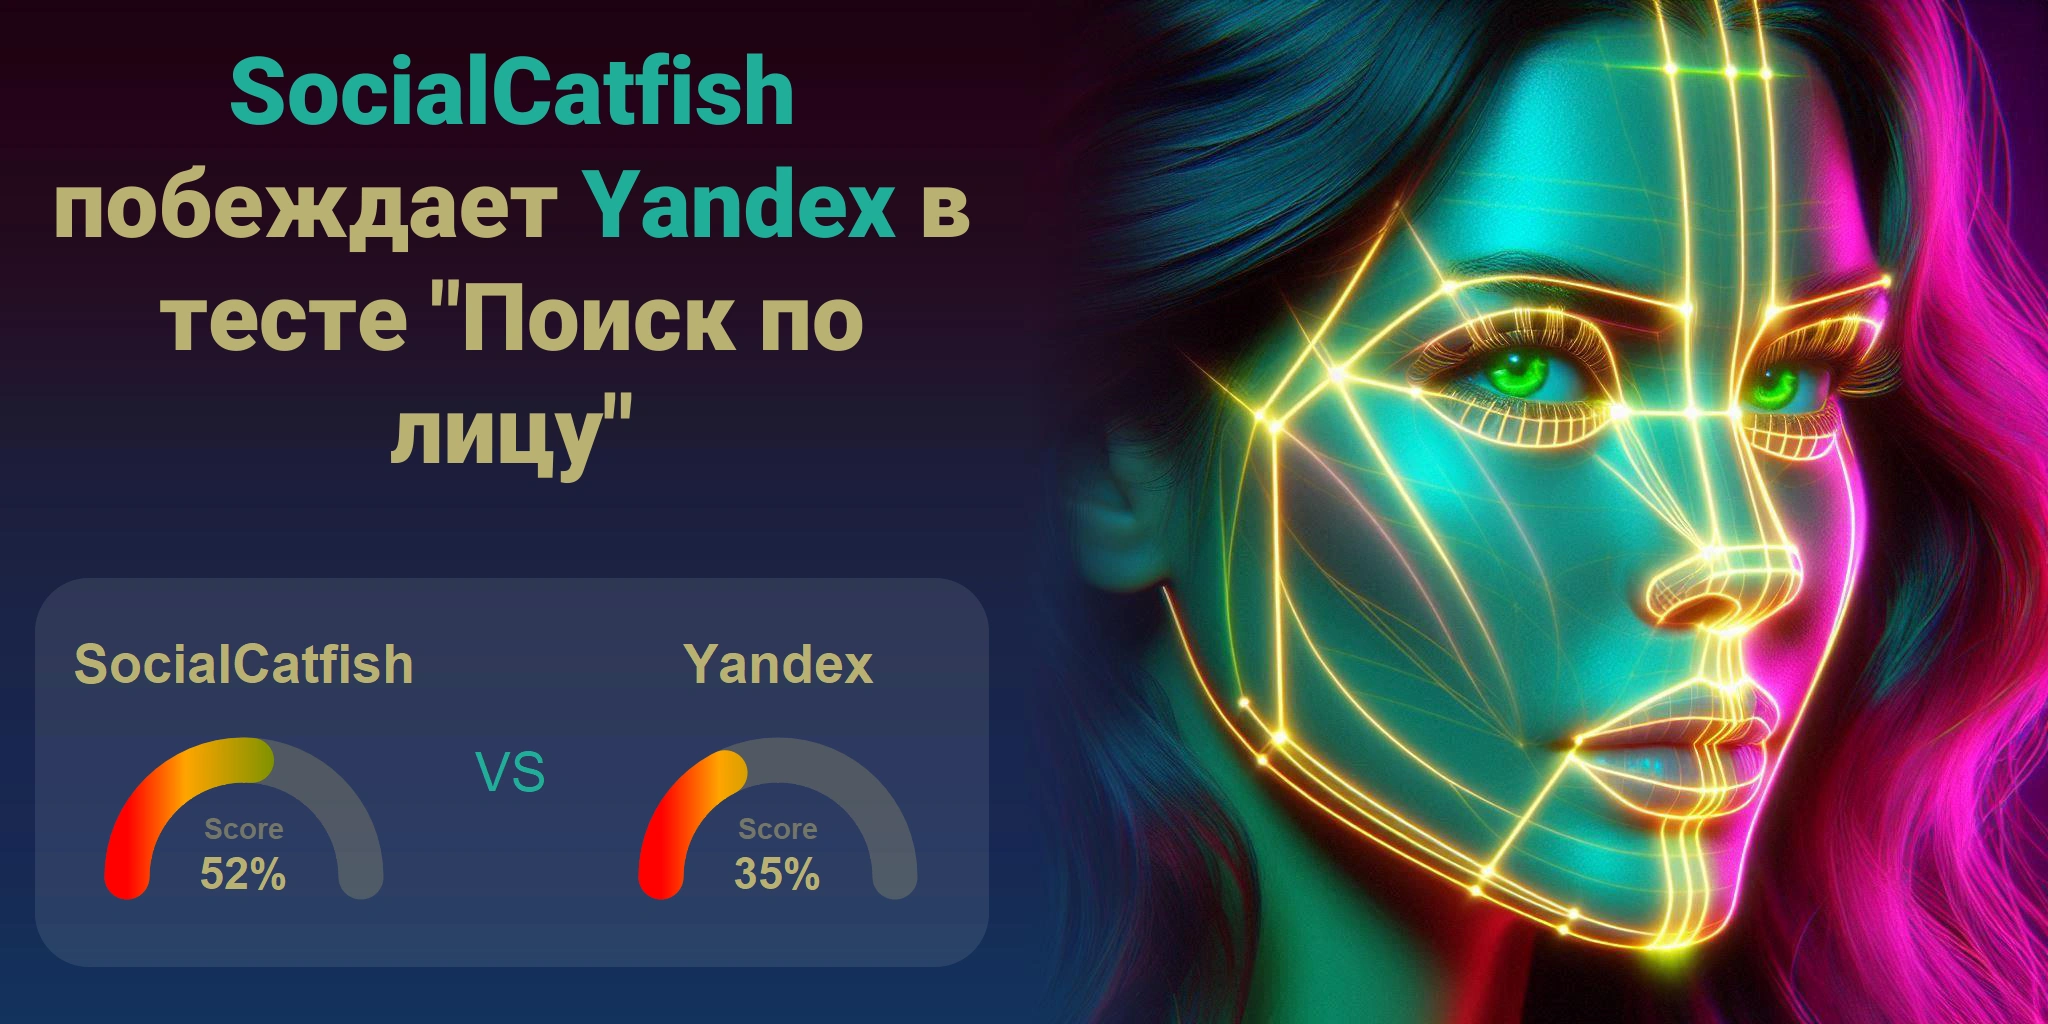 Что лучше для поиска по лицам: <br>SocialCatfish или Yandex?